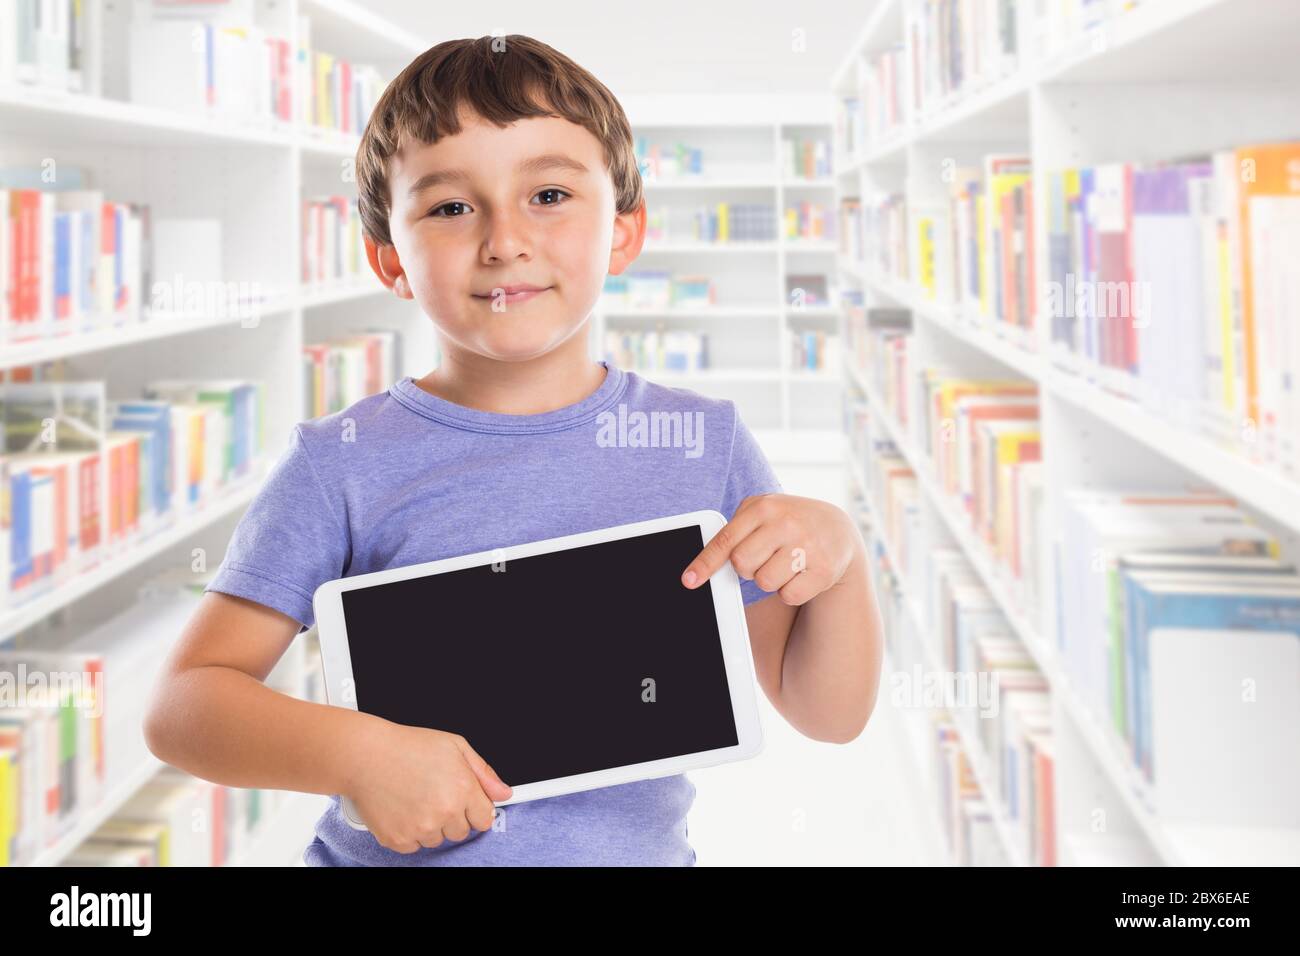 Jeune enfant de garçon pointant à la tablette informatique bibliothèque d'information marketing publicité apprendre Banque D'Images